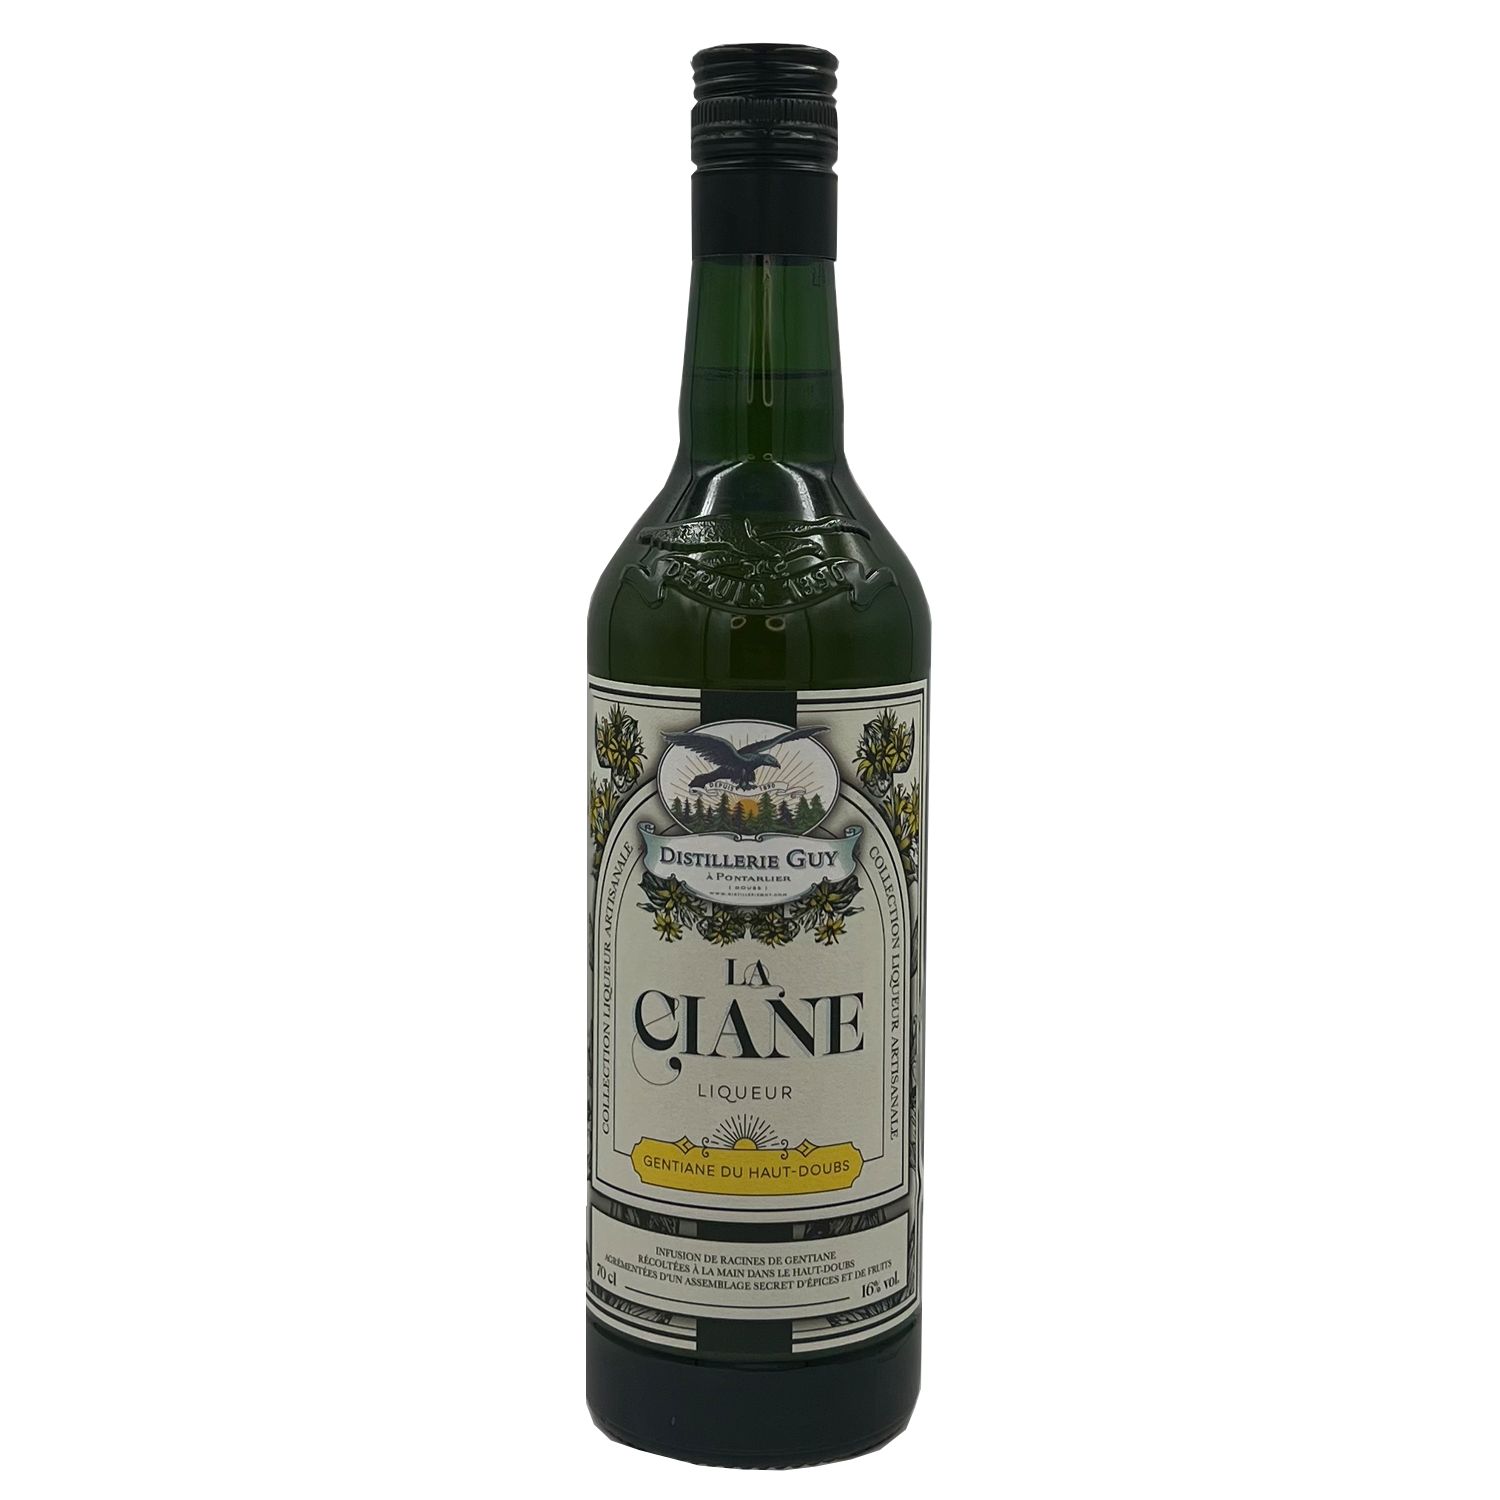 Ciane - gentian liqueur